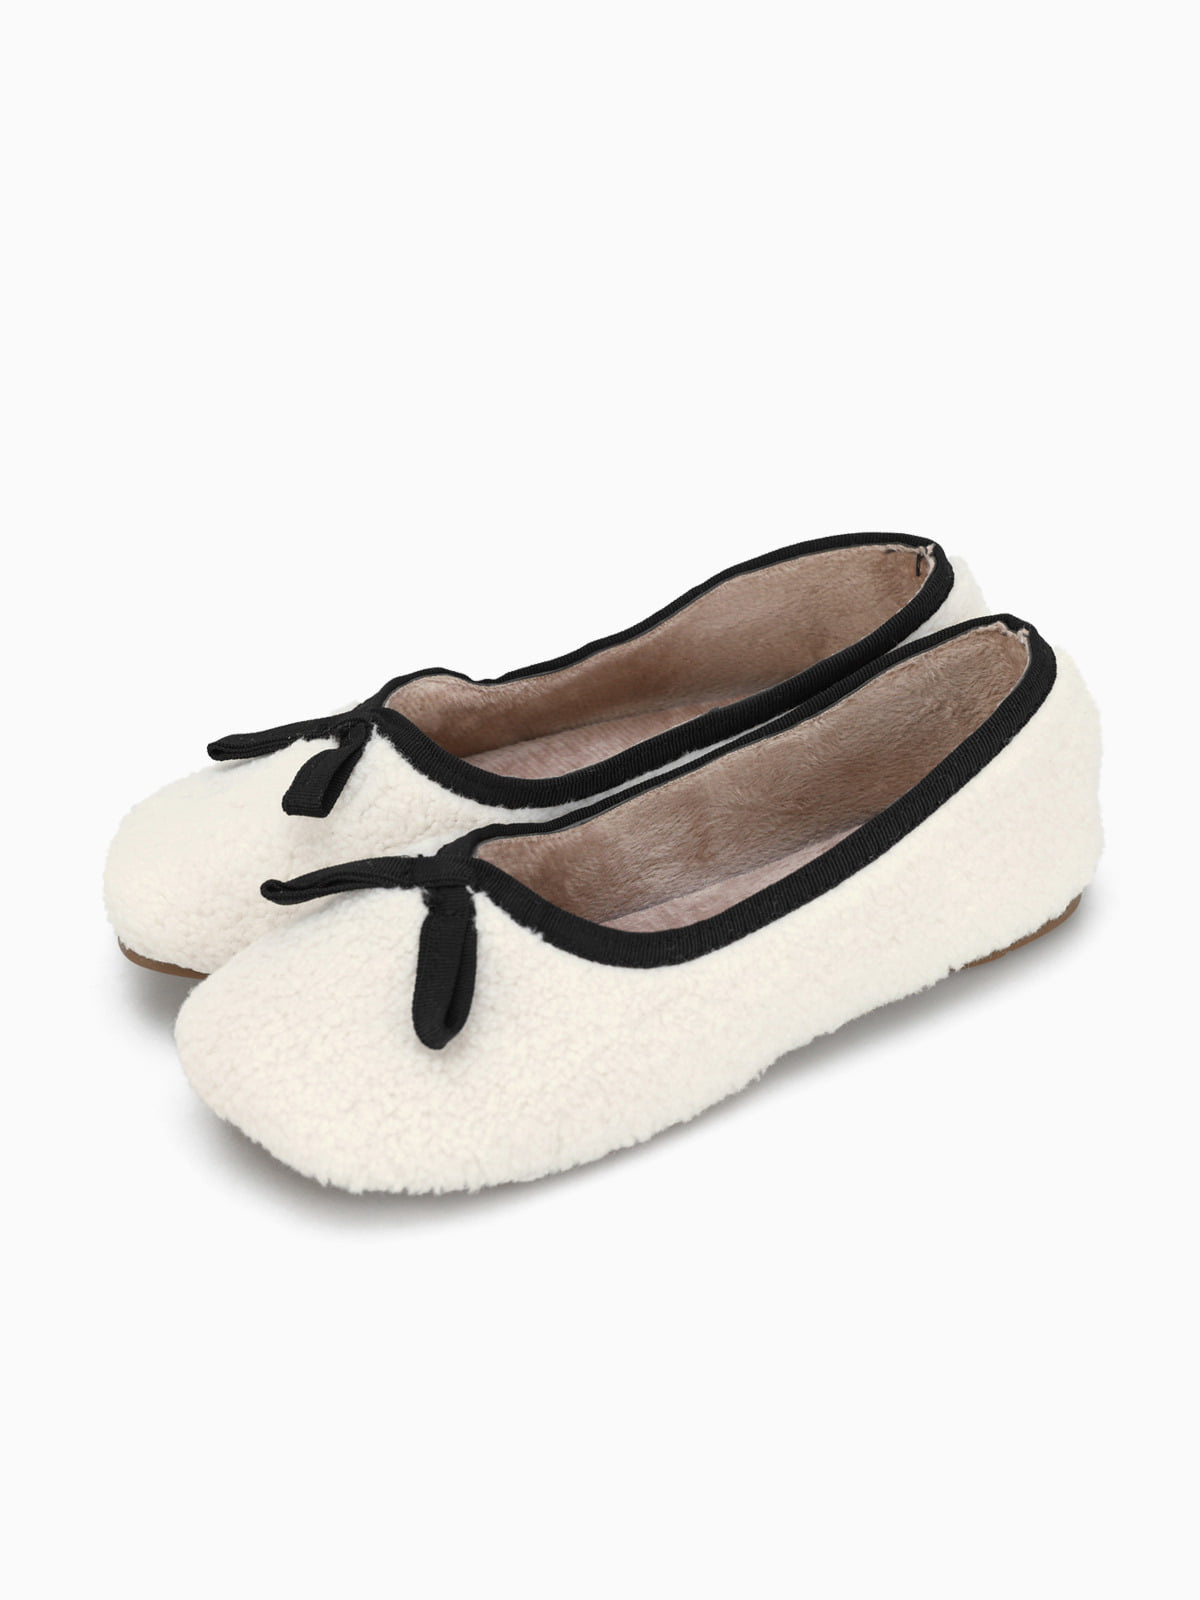 여자 플랫슈즈 LAP015 양털 리본 따뜻한 신발